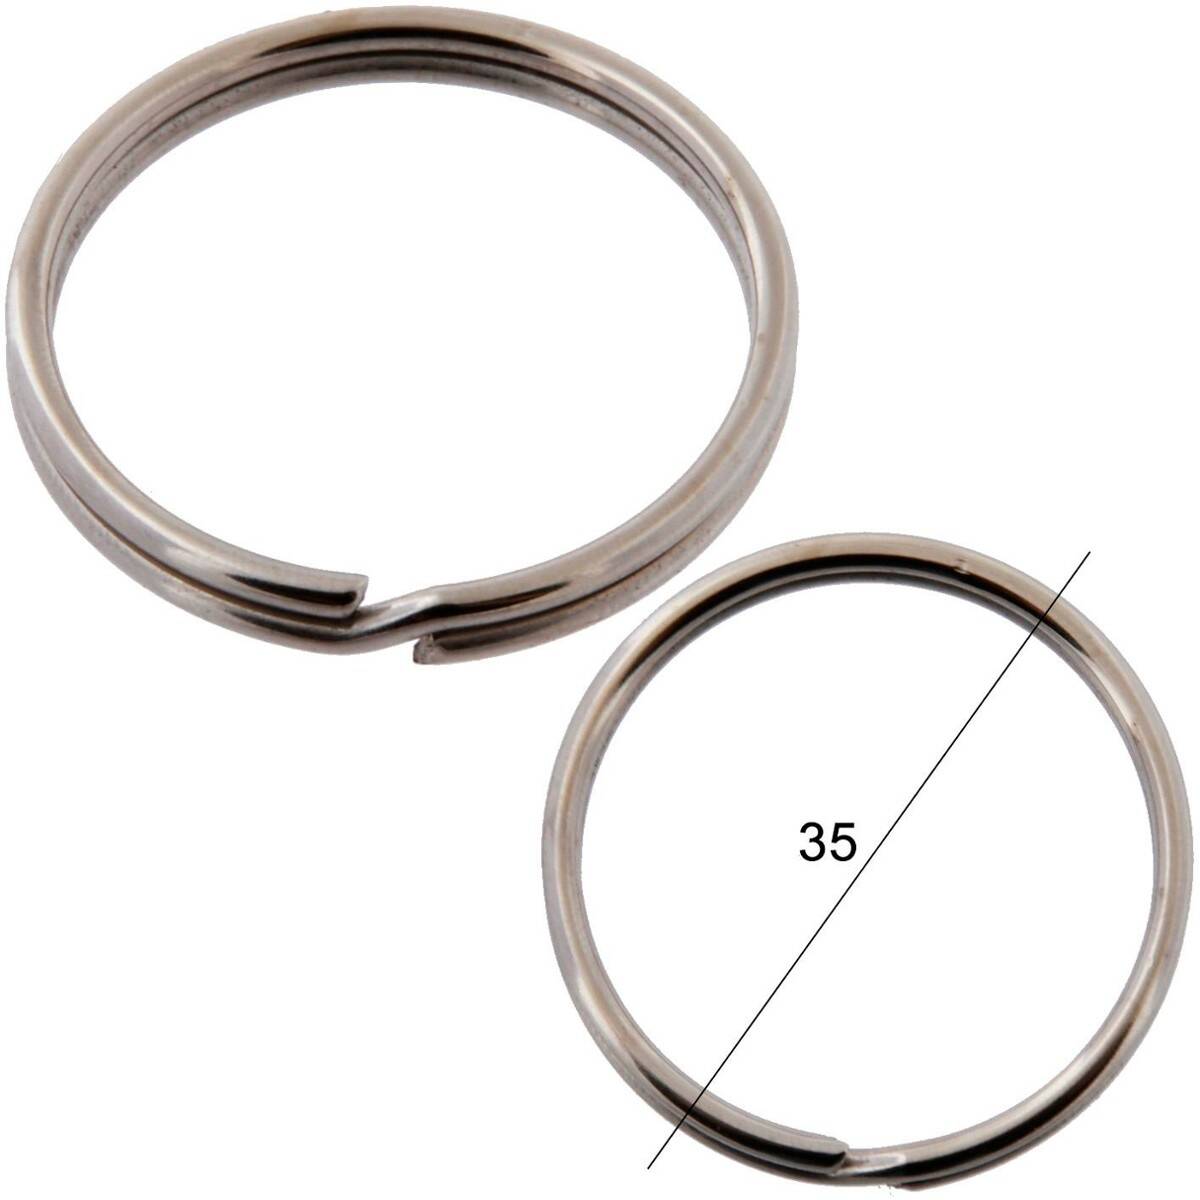 Key rings diameter 35mm